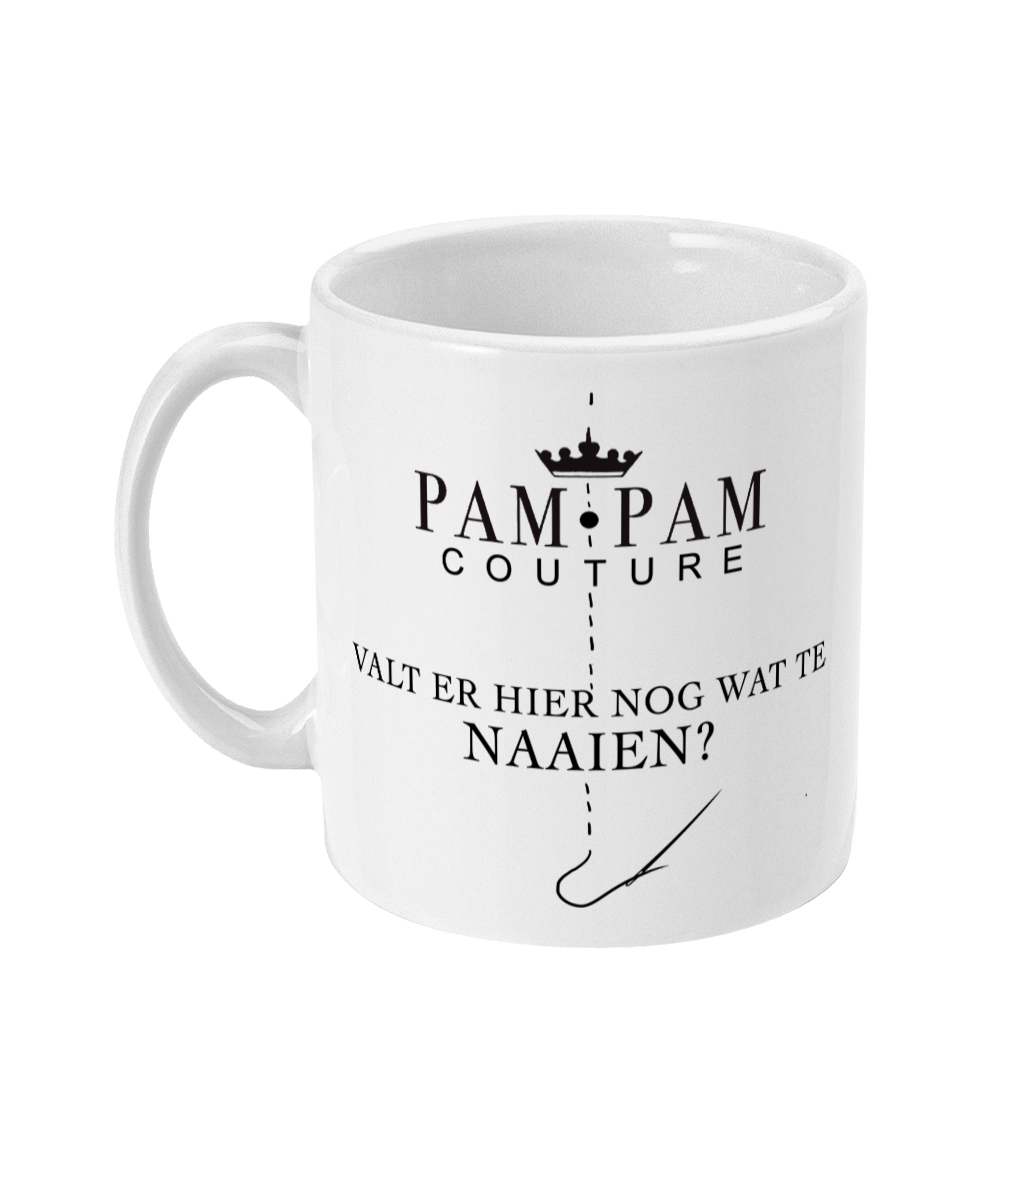 Patty Pam-Pam - Couture Mug